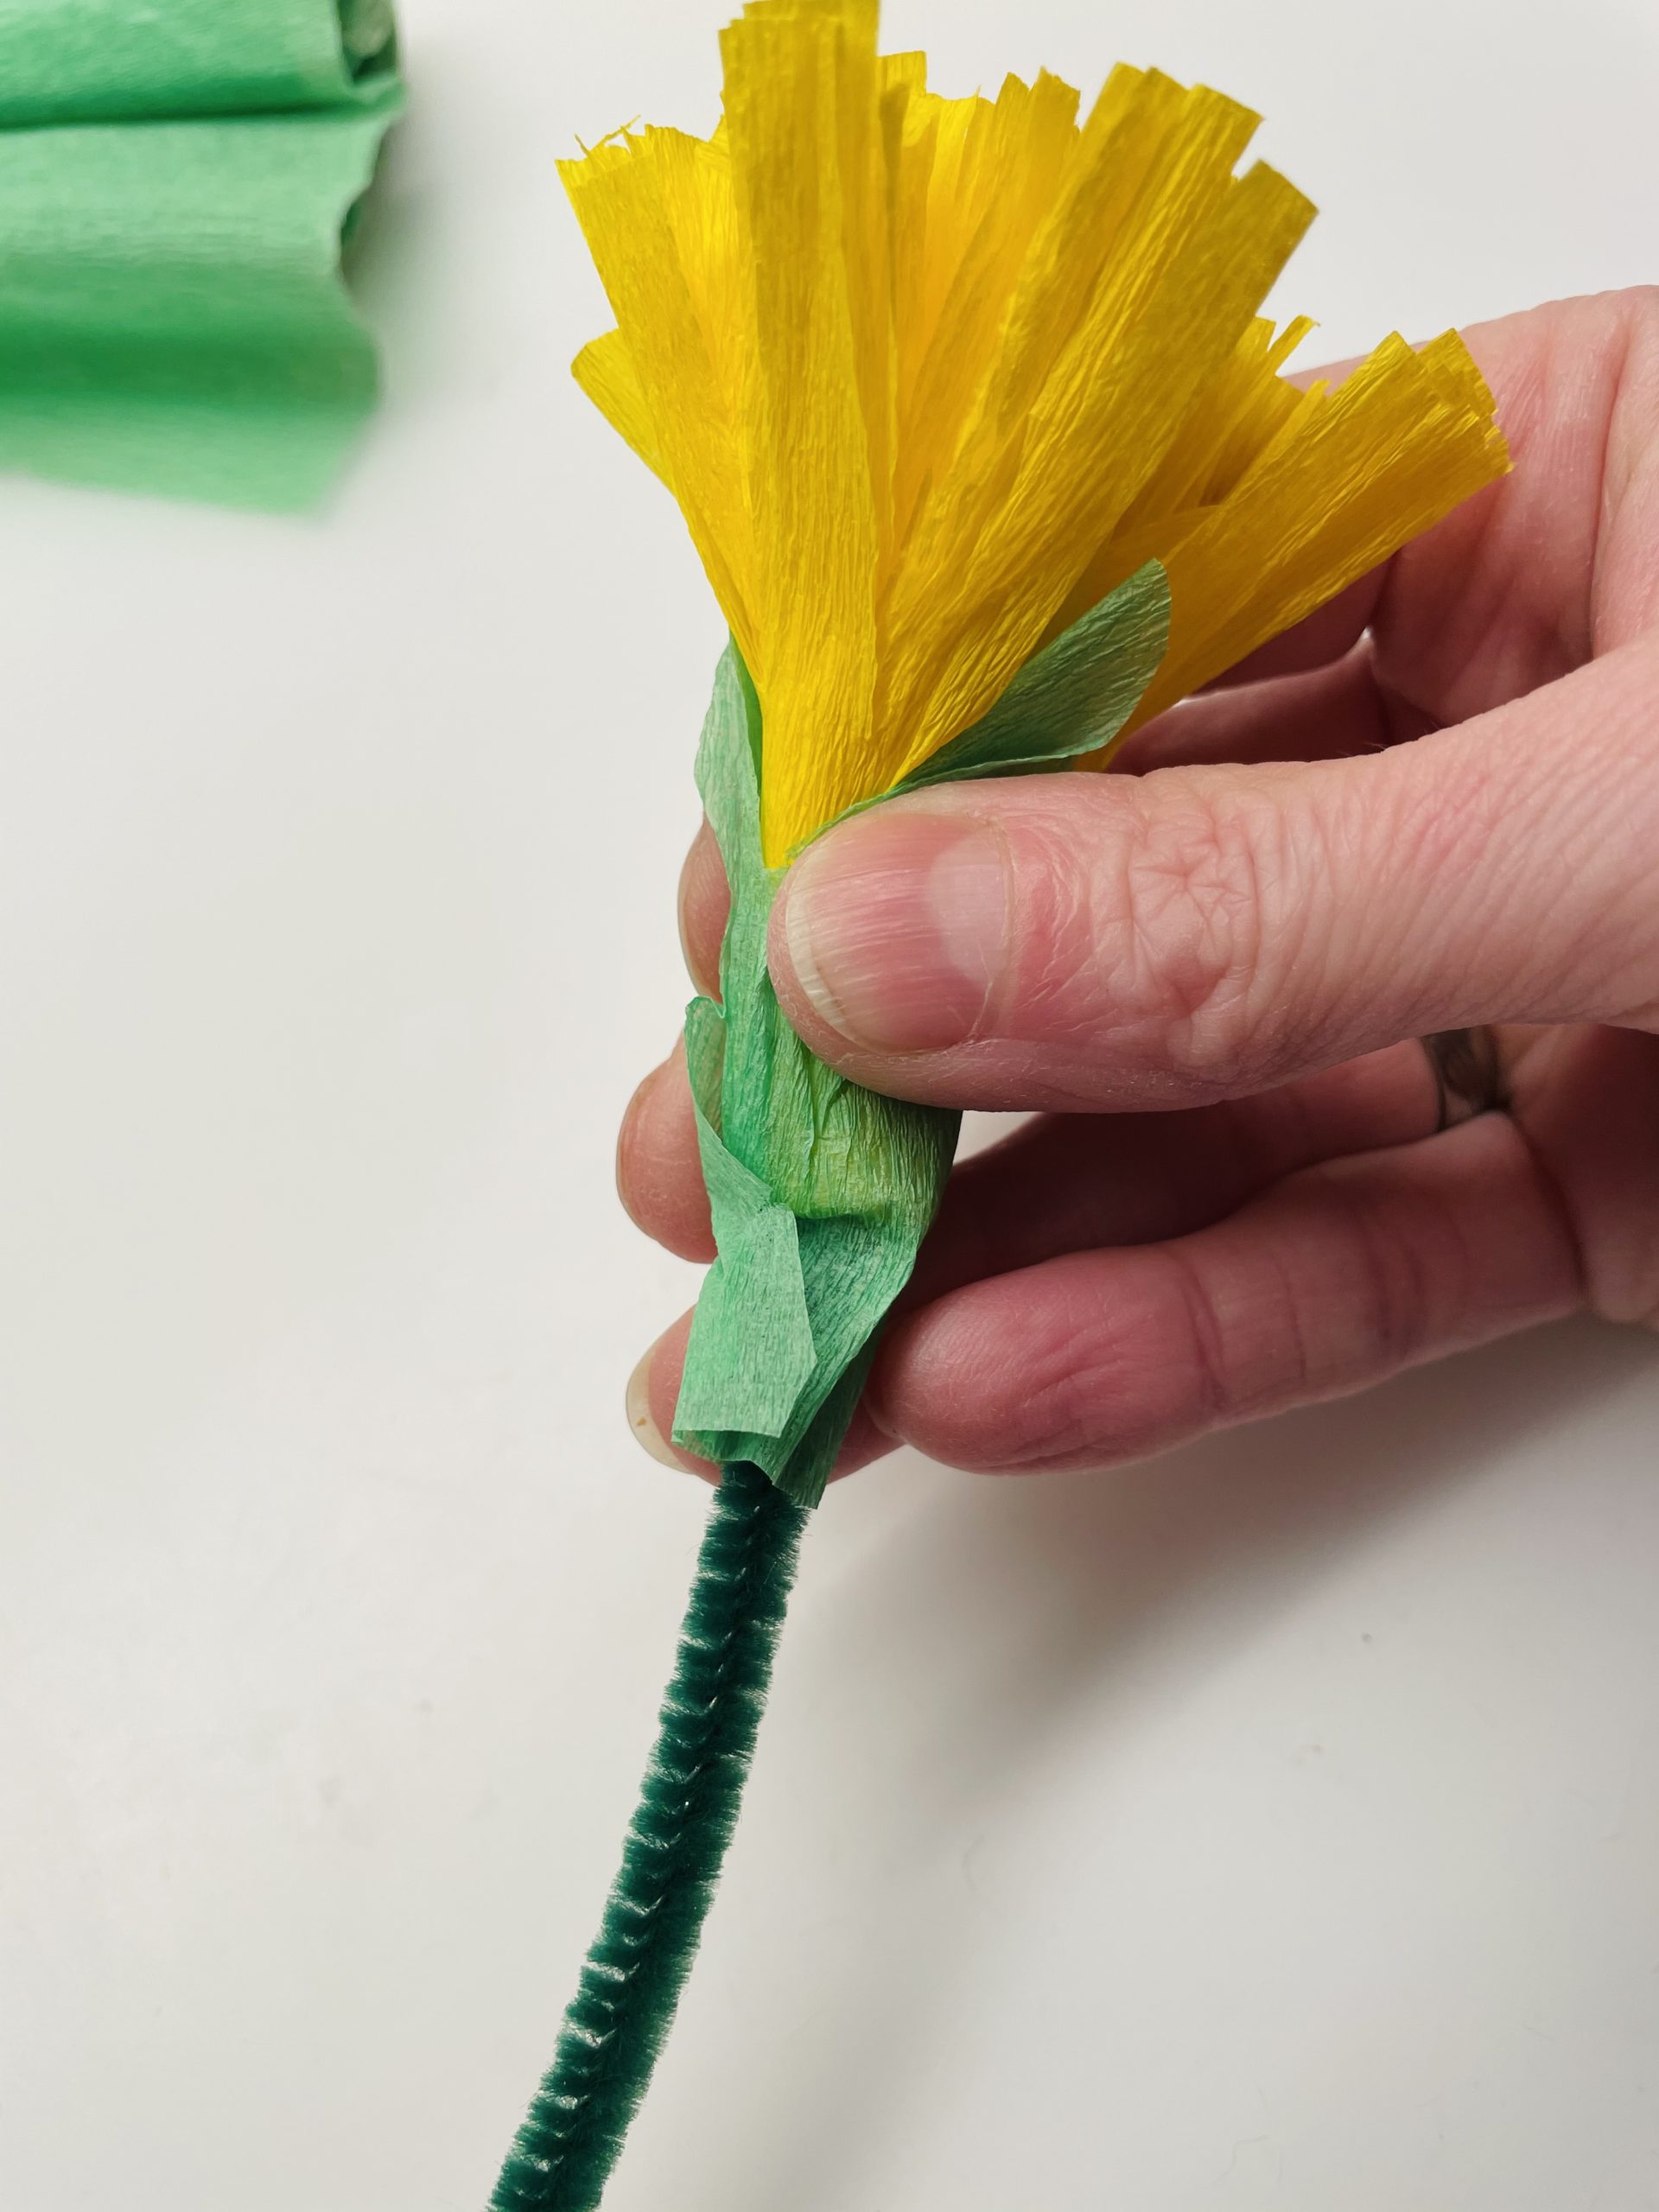 Bild zum Schritt 20 für das Bastel- und DIY-Abenteuer für Kinder: 'Steckt jetzt von unten einen Pfeifenputzer in das Blütenbündel und...'